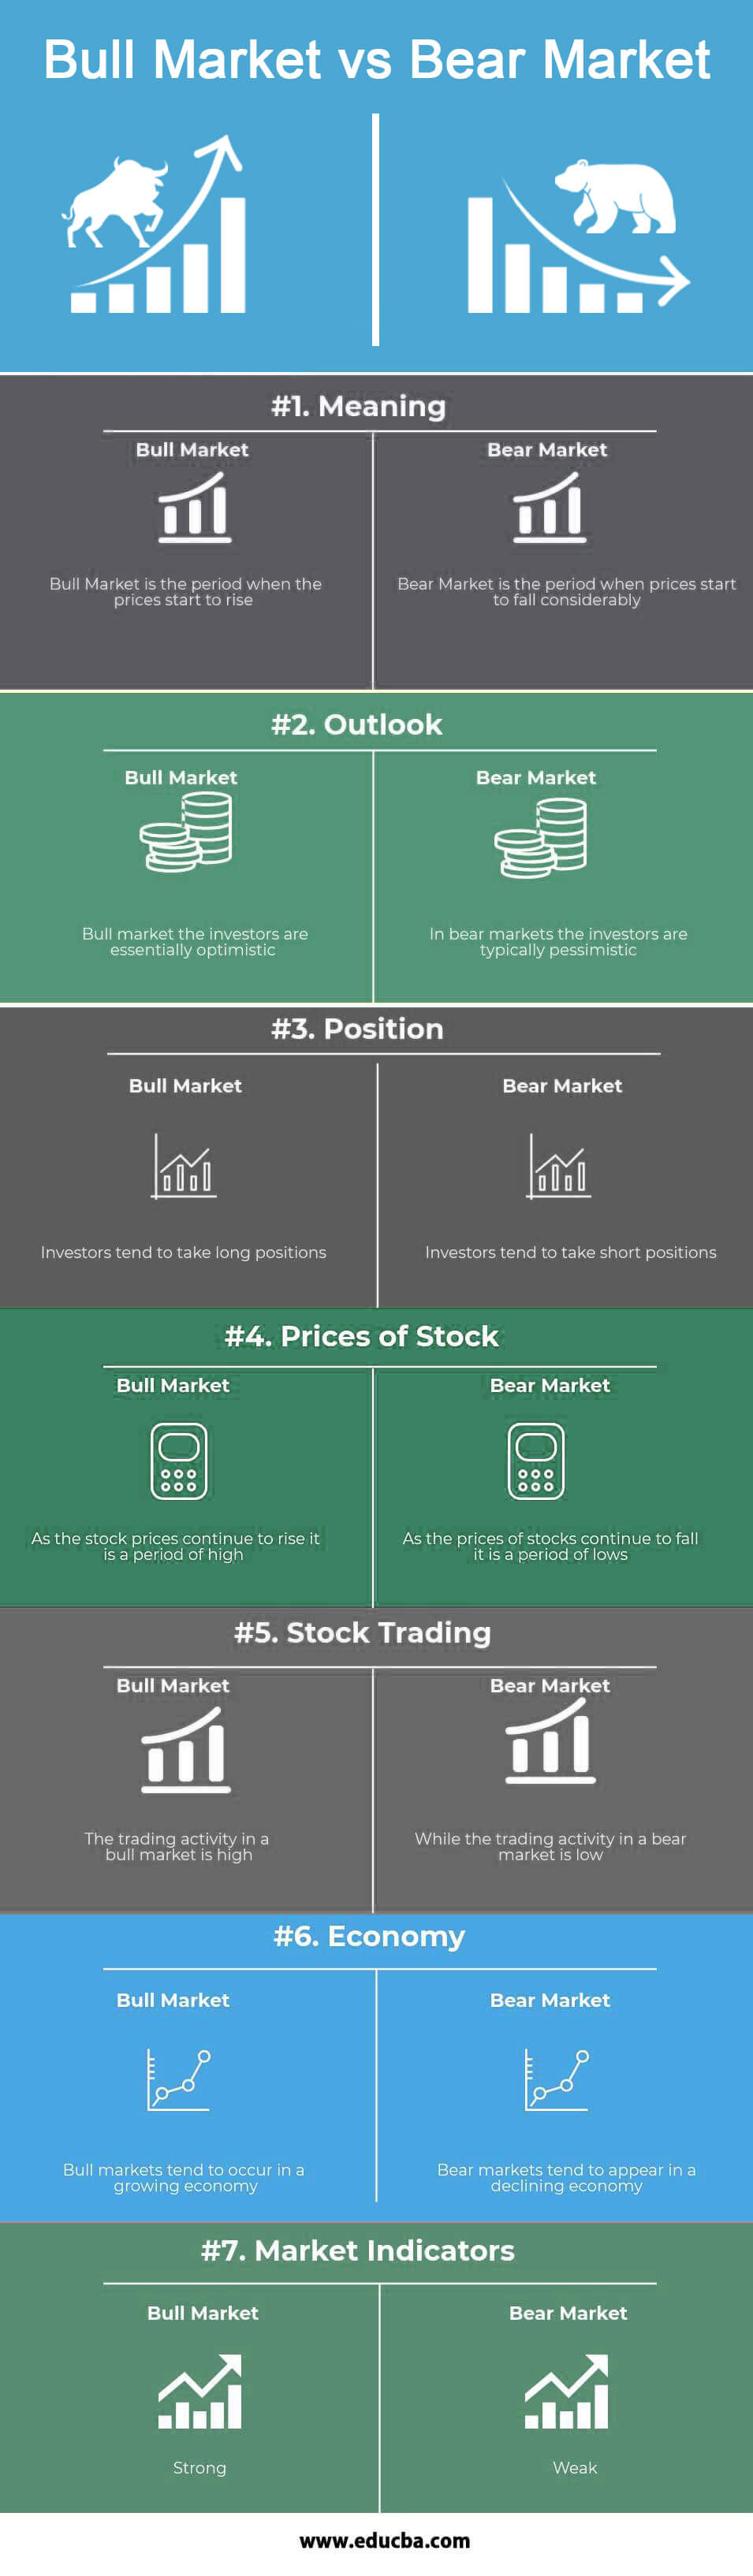 Bull-Market-vs-Bear-Market-info